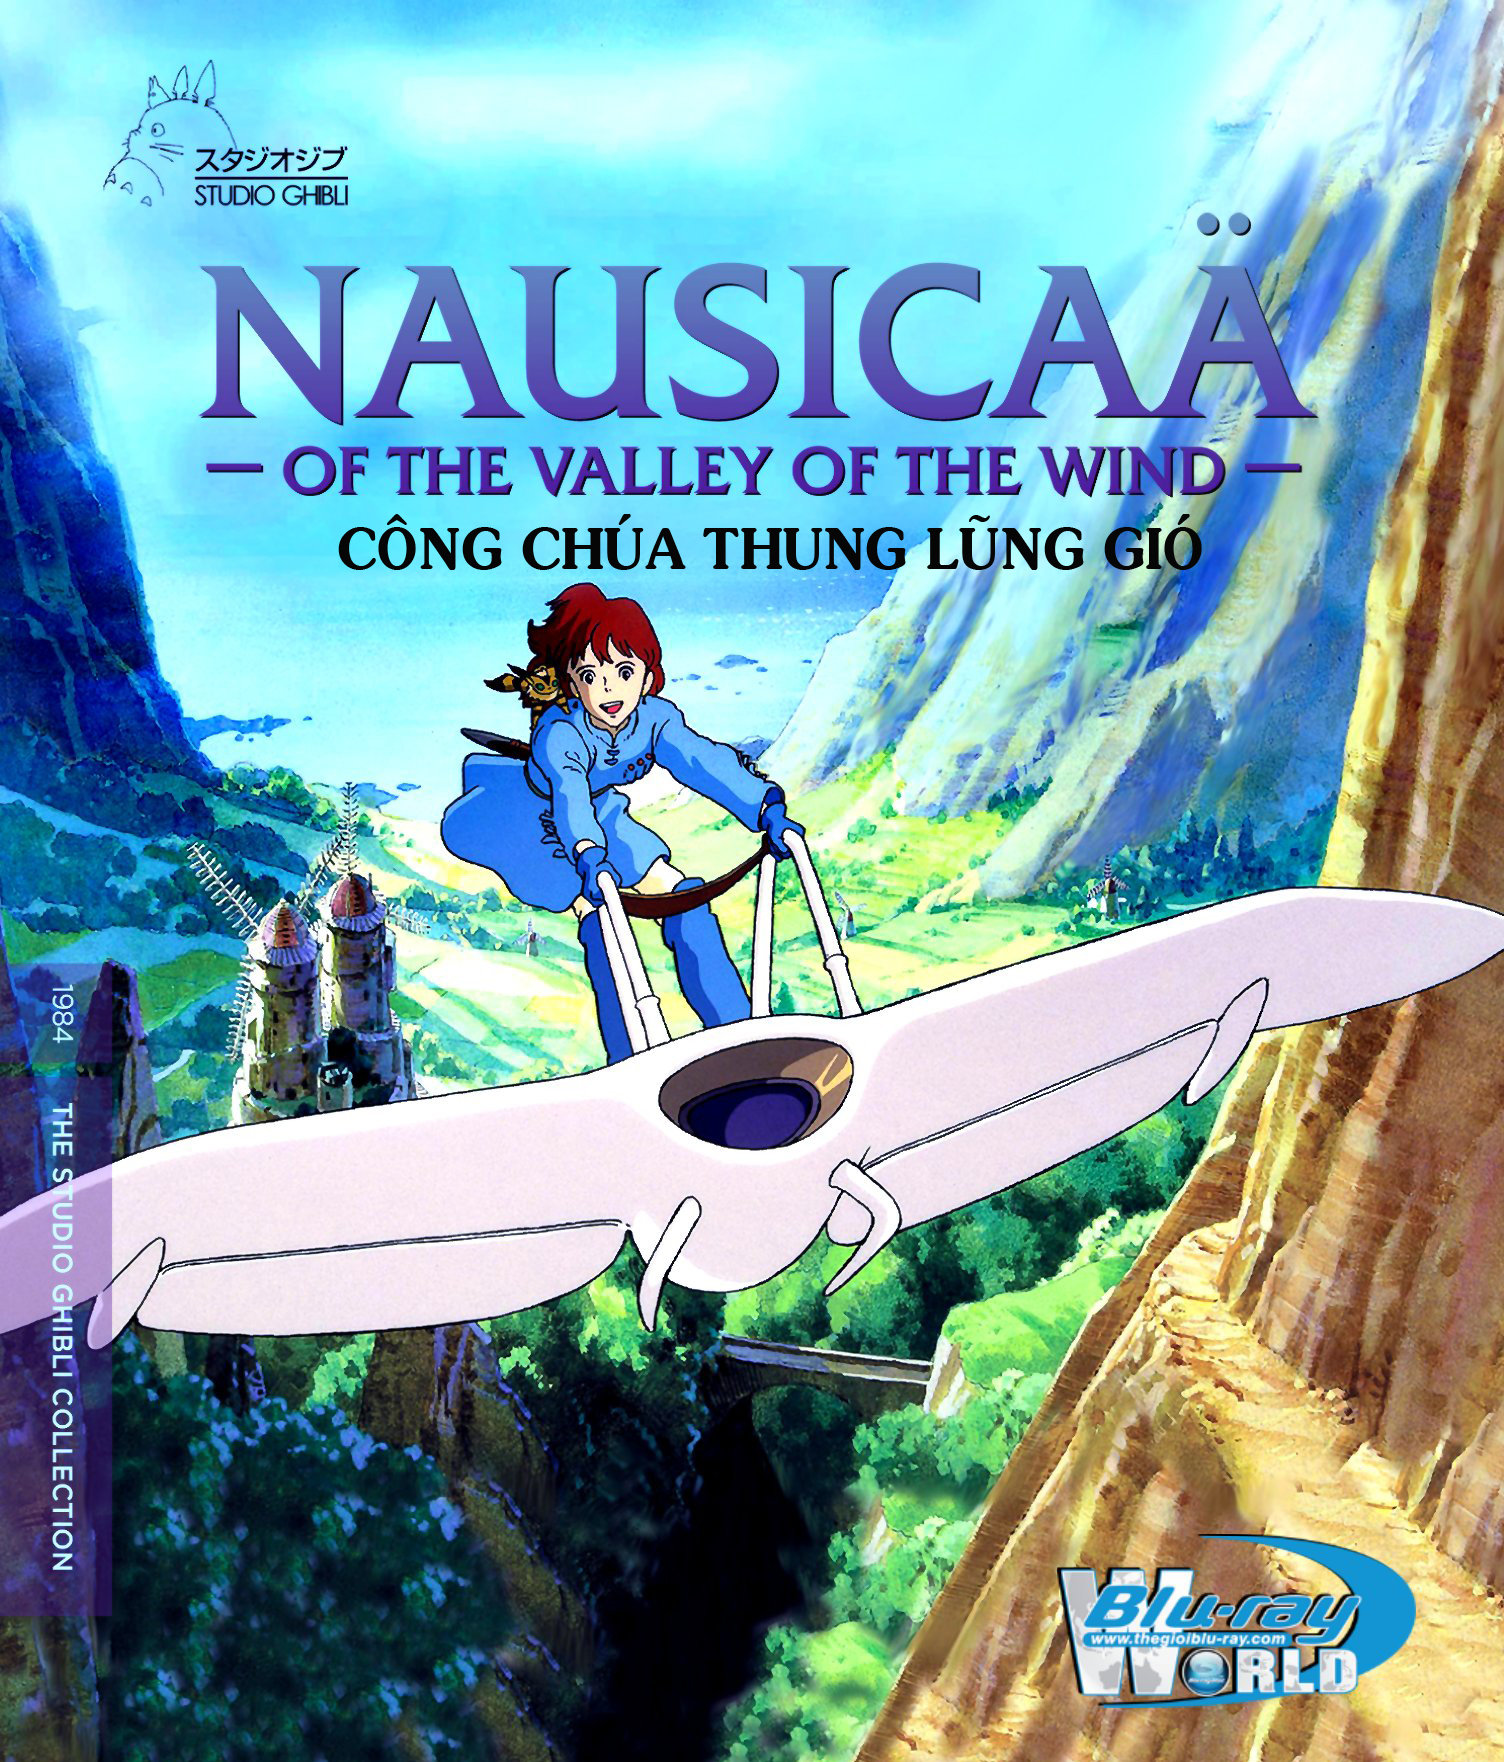 B1525. Nausicaa of the Valley of the Wind 1984 - CÔNG CHÚA THUNG LŨNG GIÓ 2D25G (DTS-HD MA 5.1) Studio Ghibli